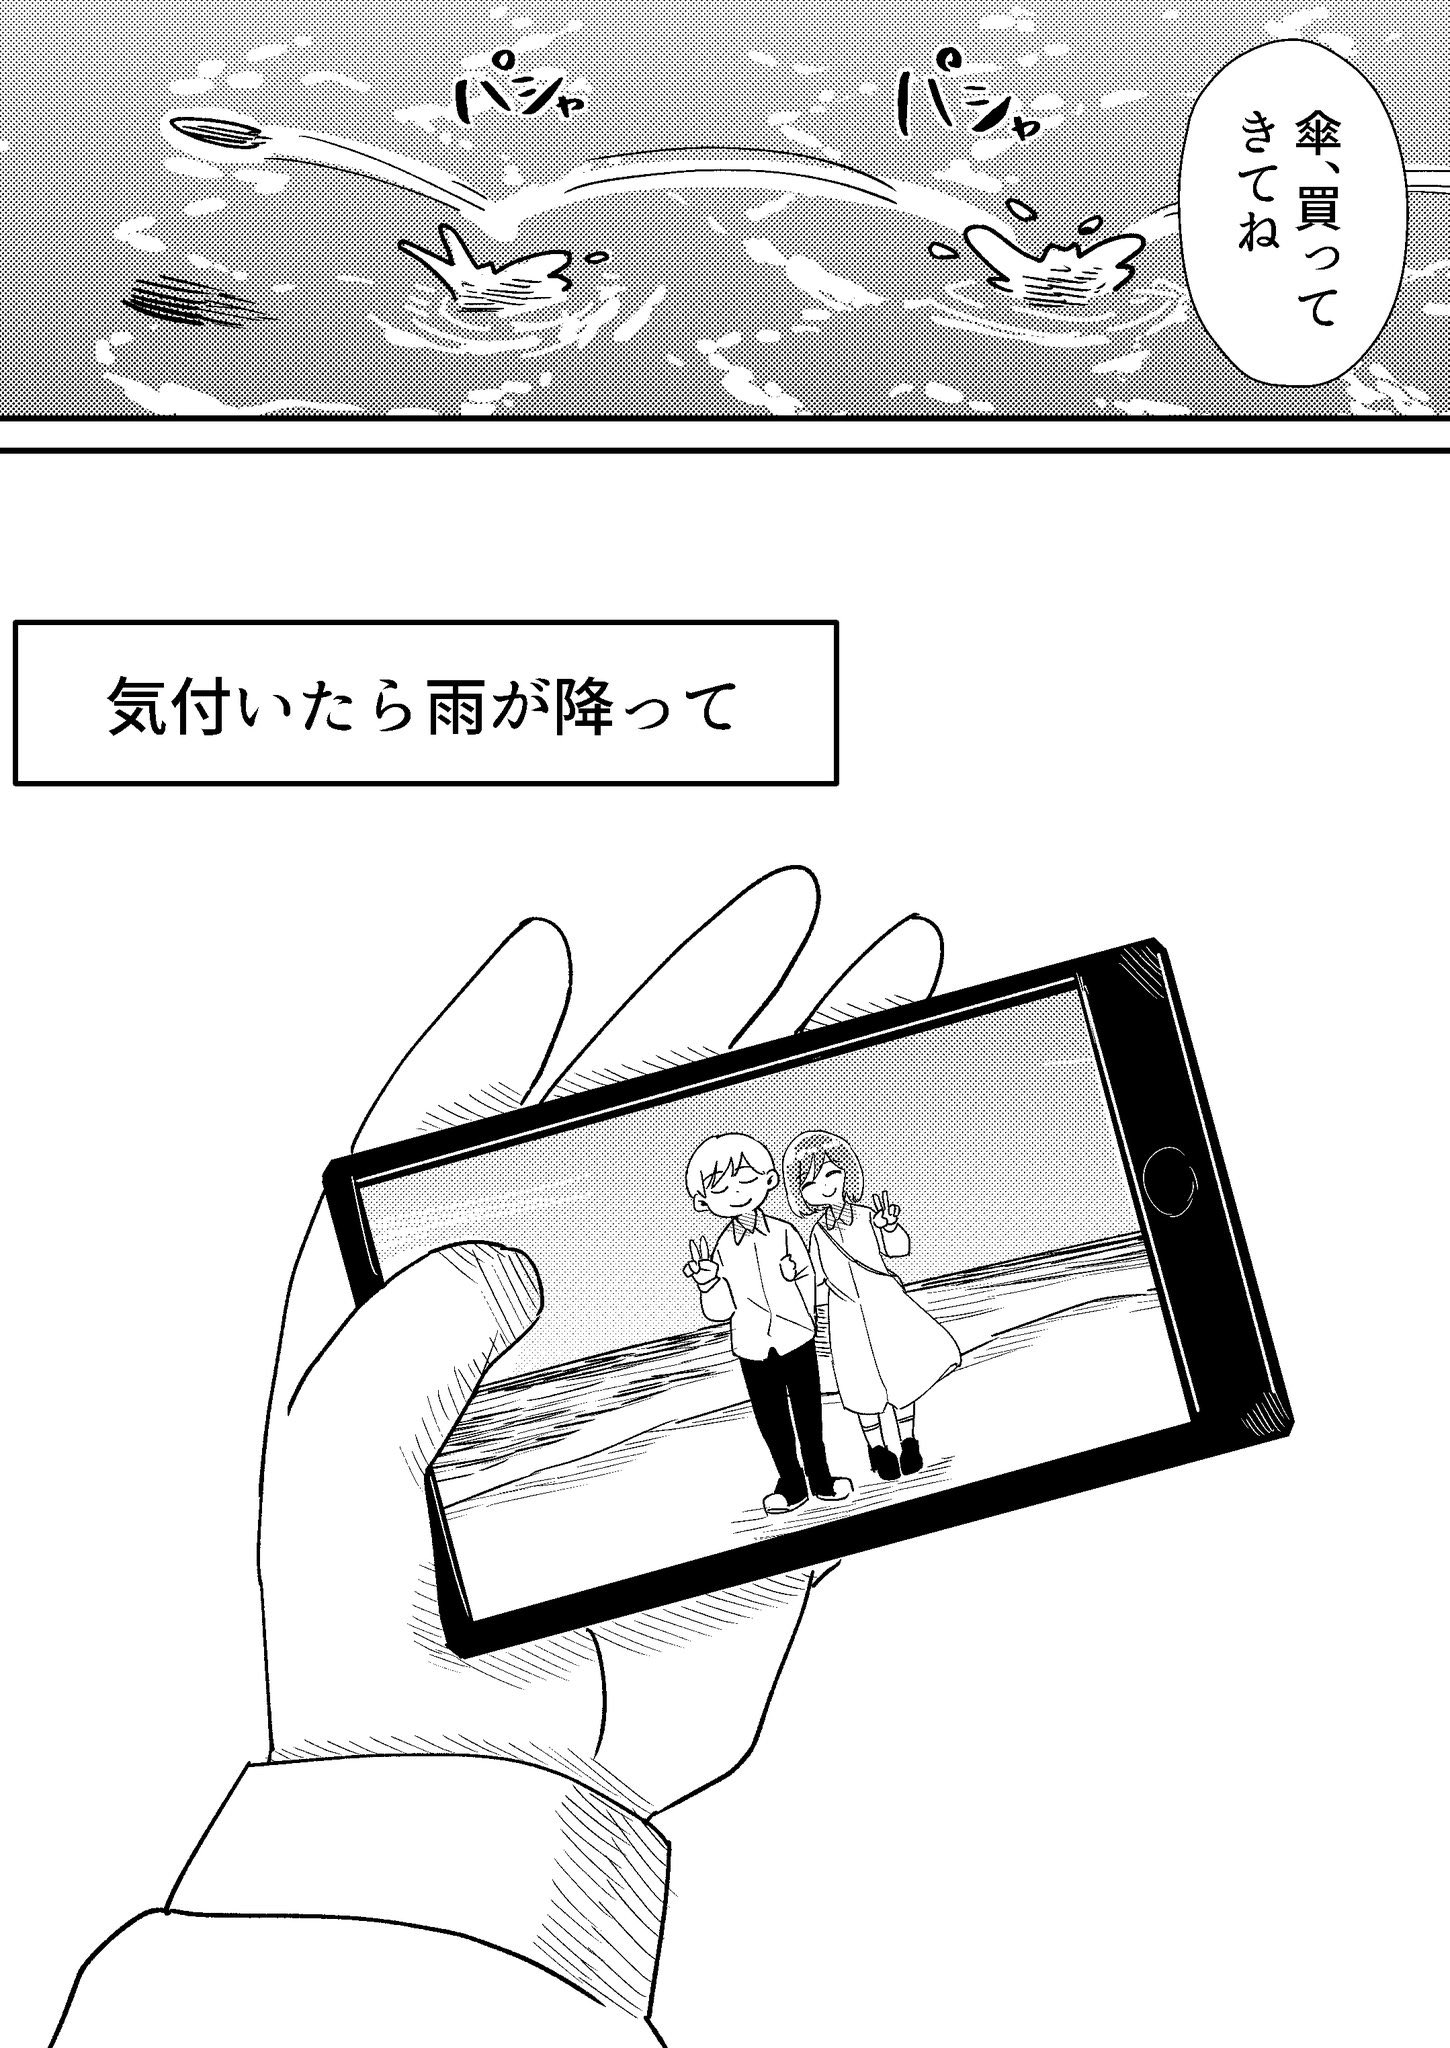 【漫画】恋人と雨の記憶の画像